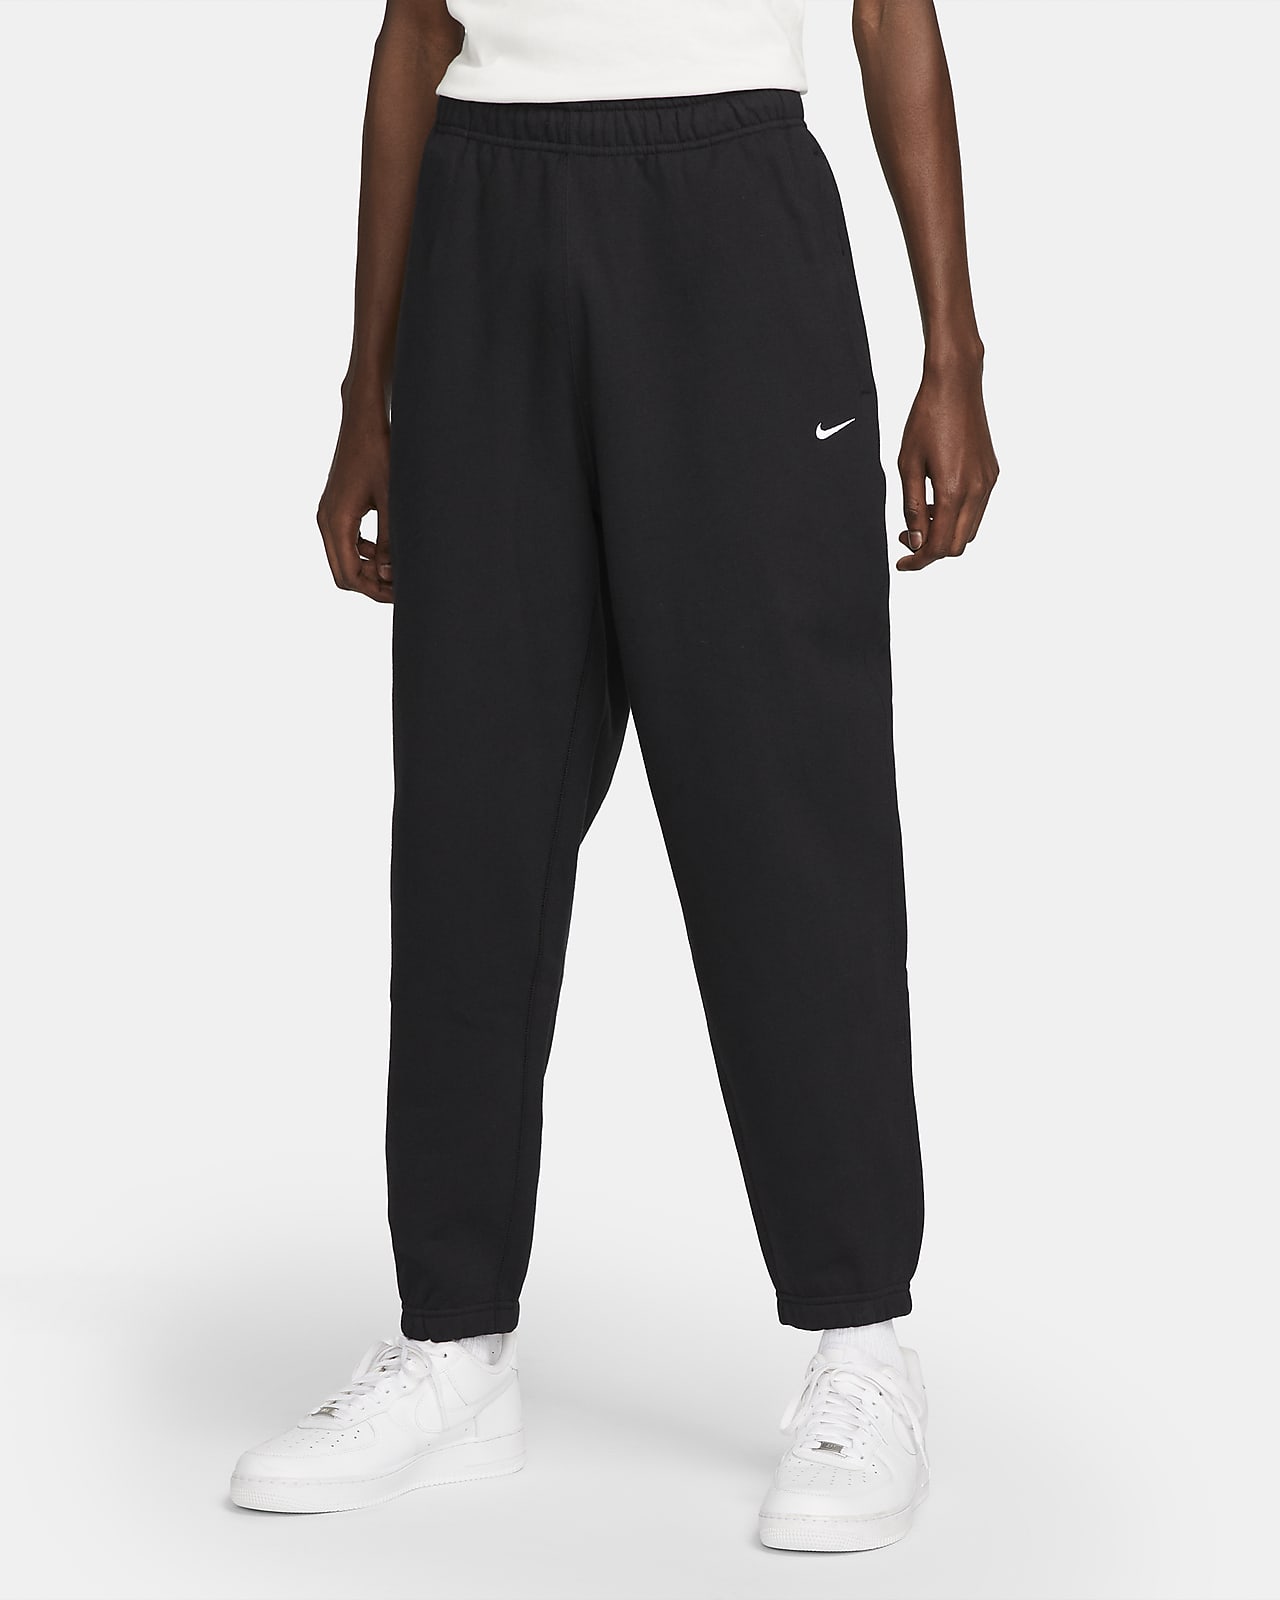 Ανδρικό παντελόνι φλις Nike Solo Swoosh